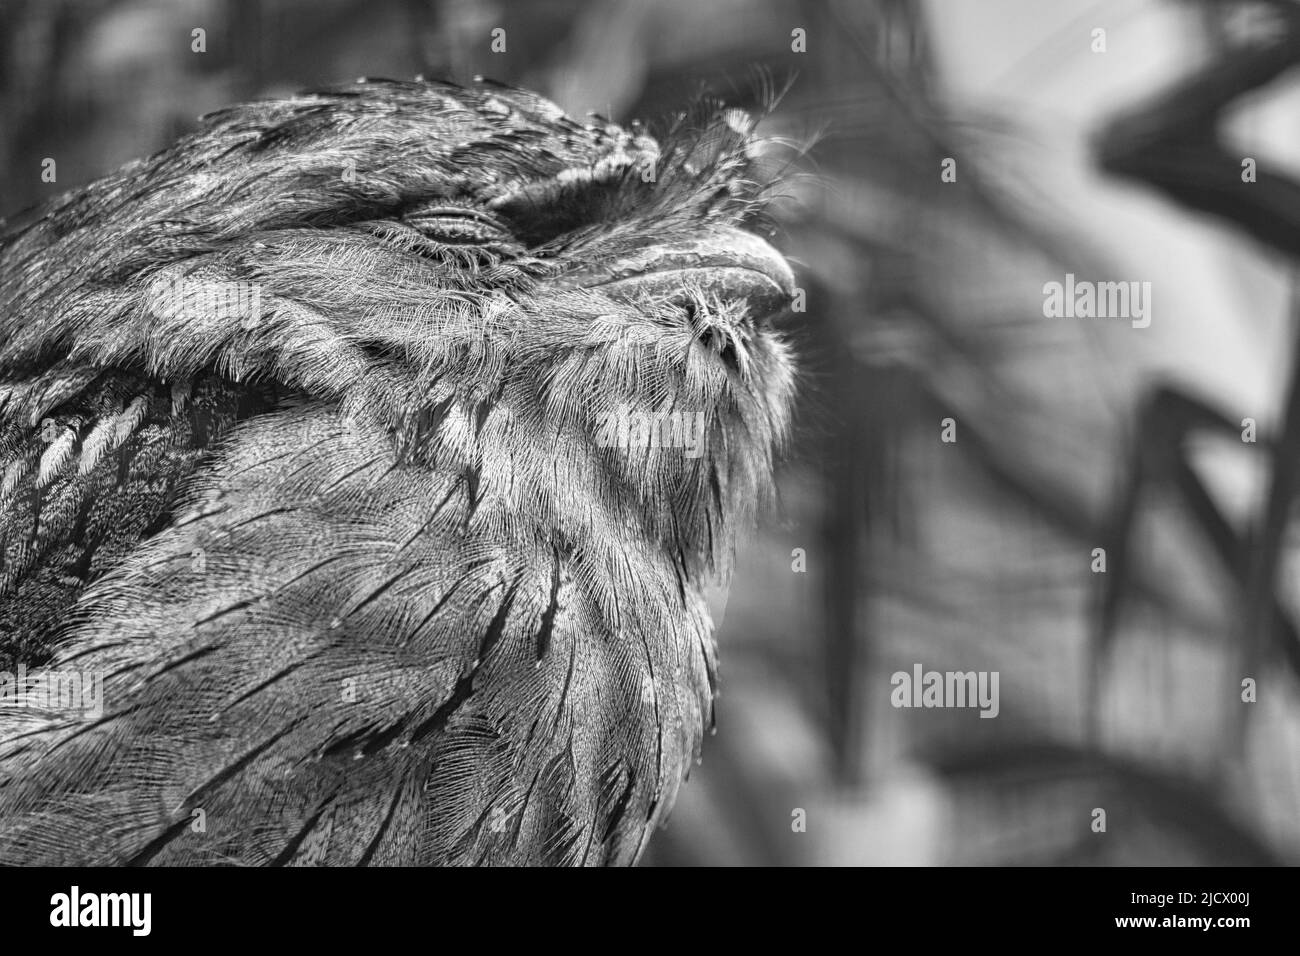 un piccolo kautz su un tronco d'albero. Occhi chiusi e dormenti. Foto animale di un uccello civico. Foto Stock